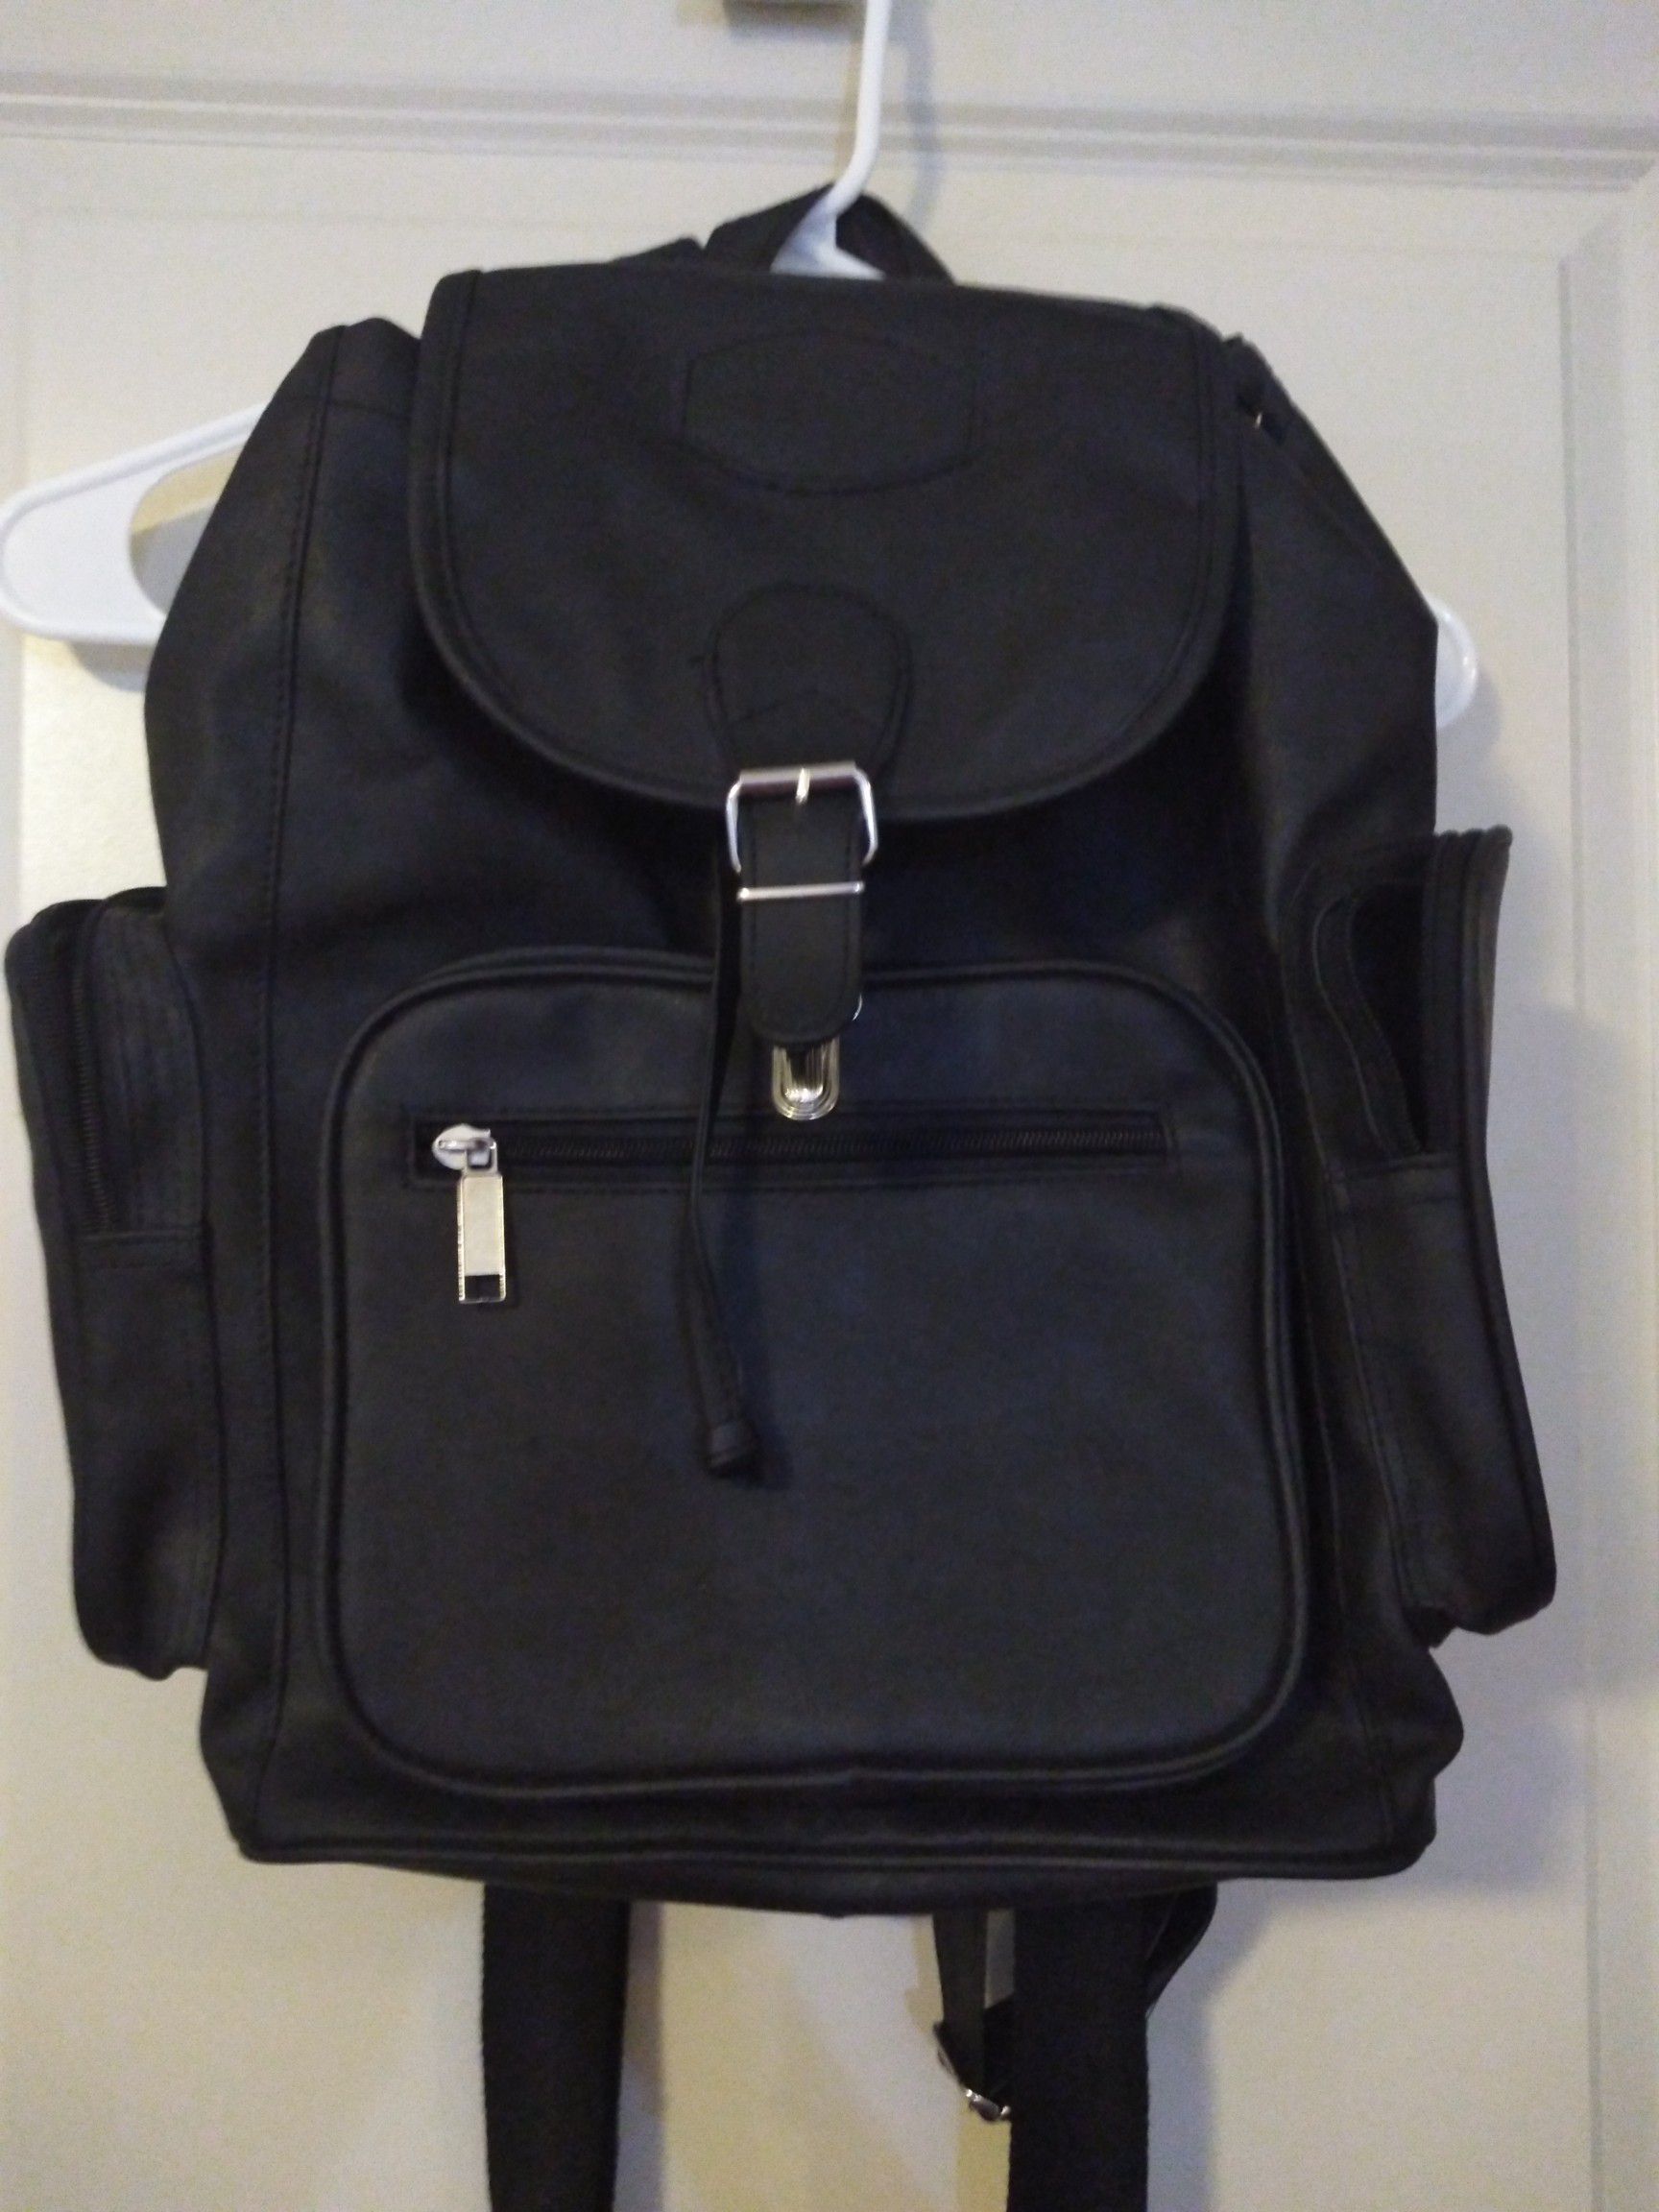 Cute backpack purse